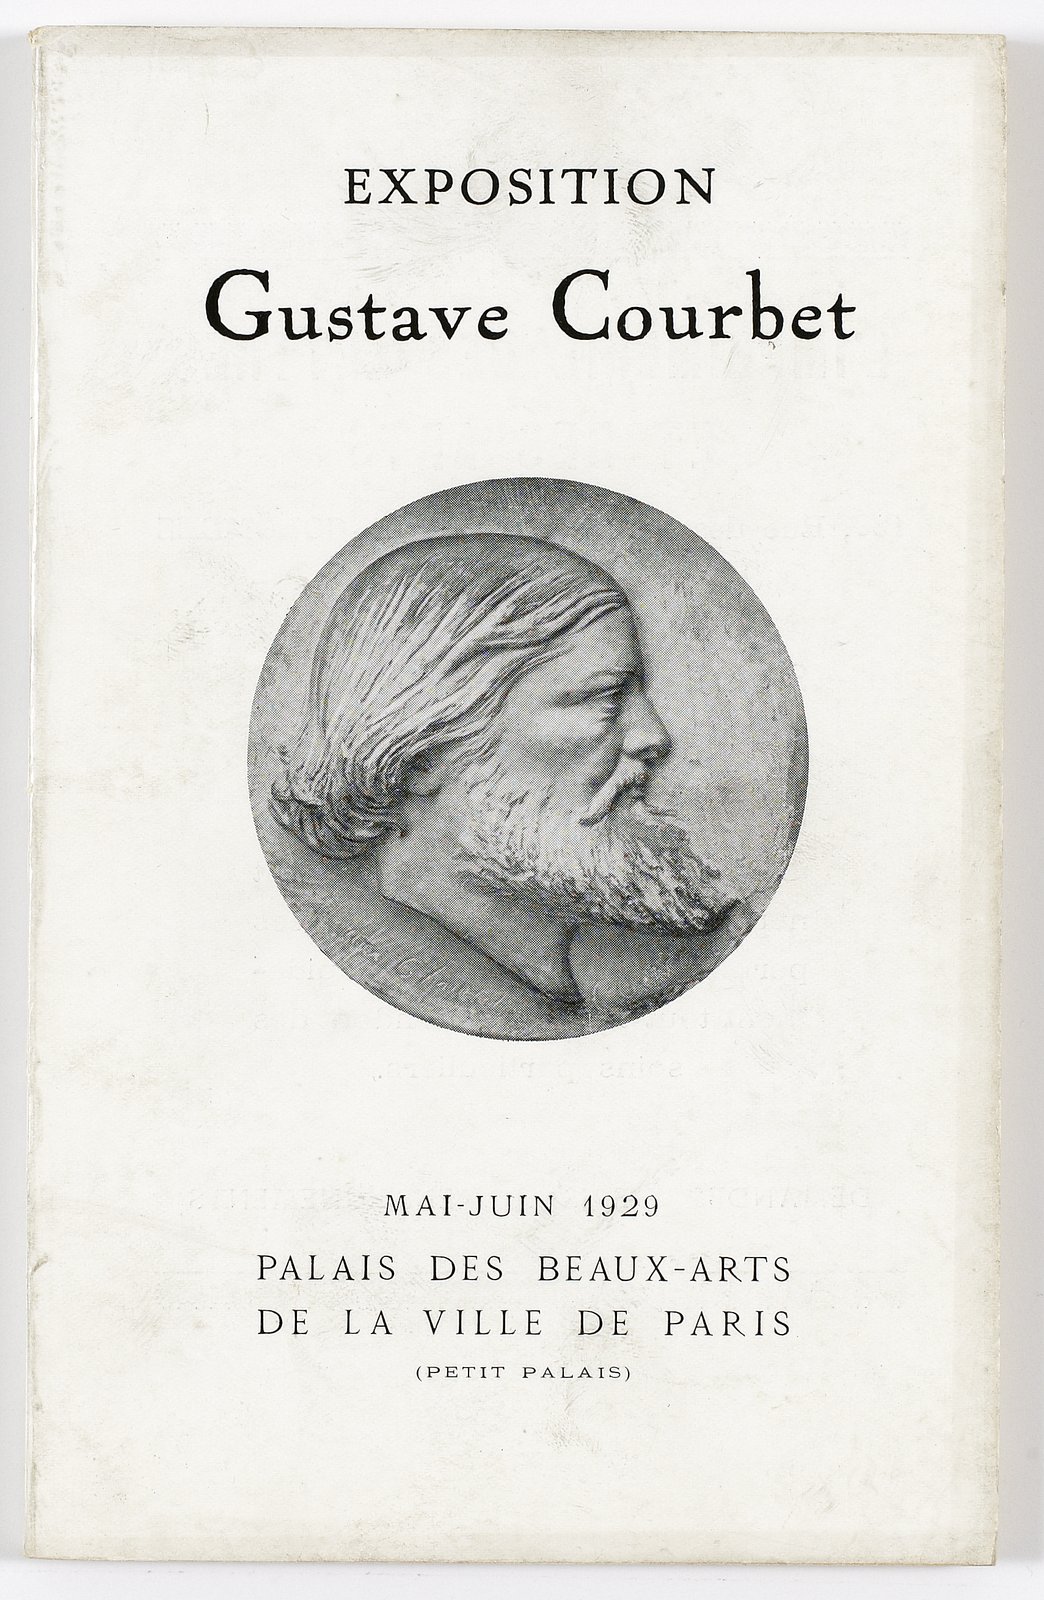 Couverture du catalogue de l'exposition Courbet de 1929